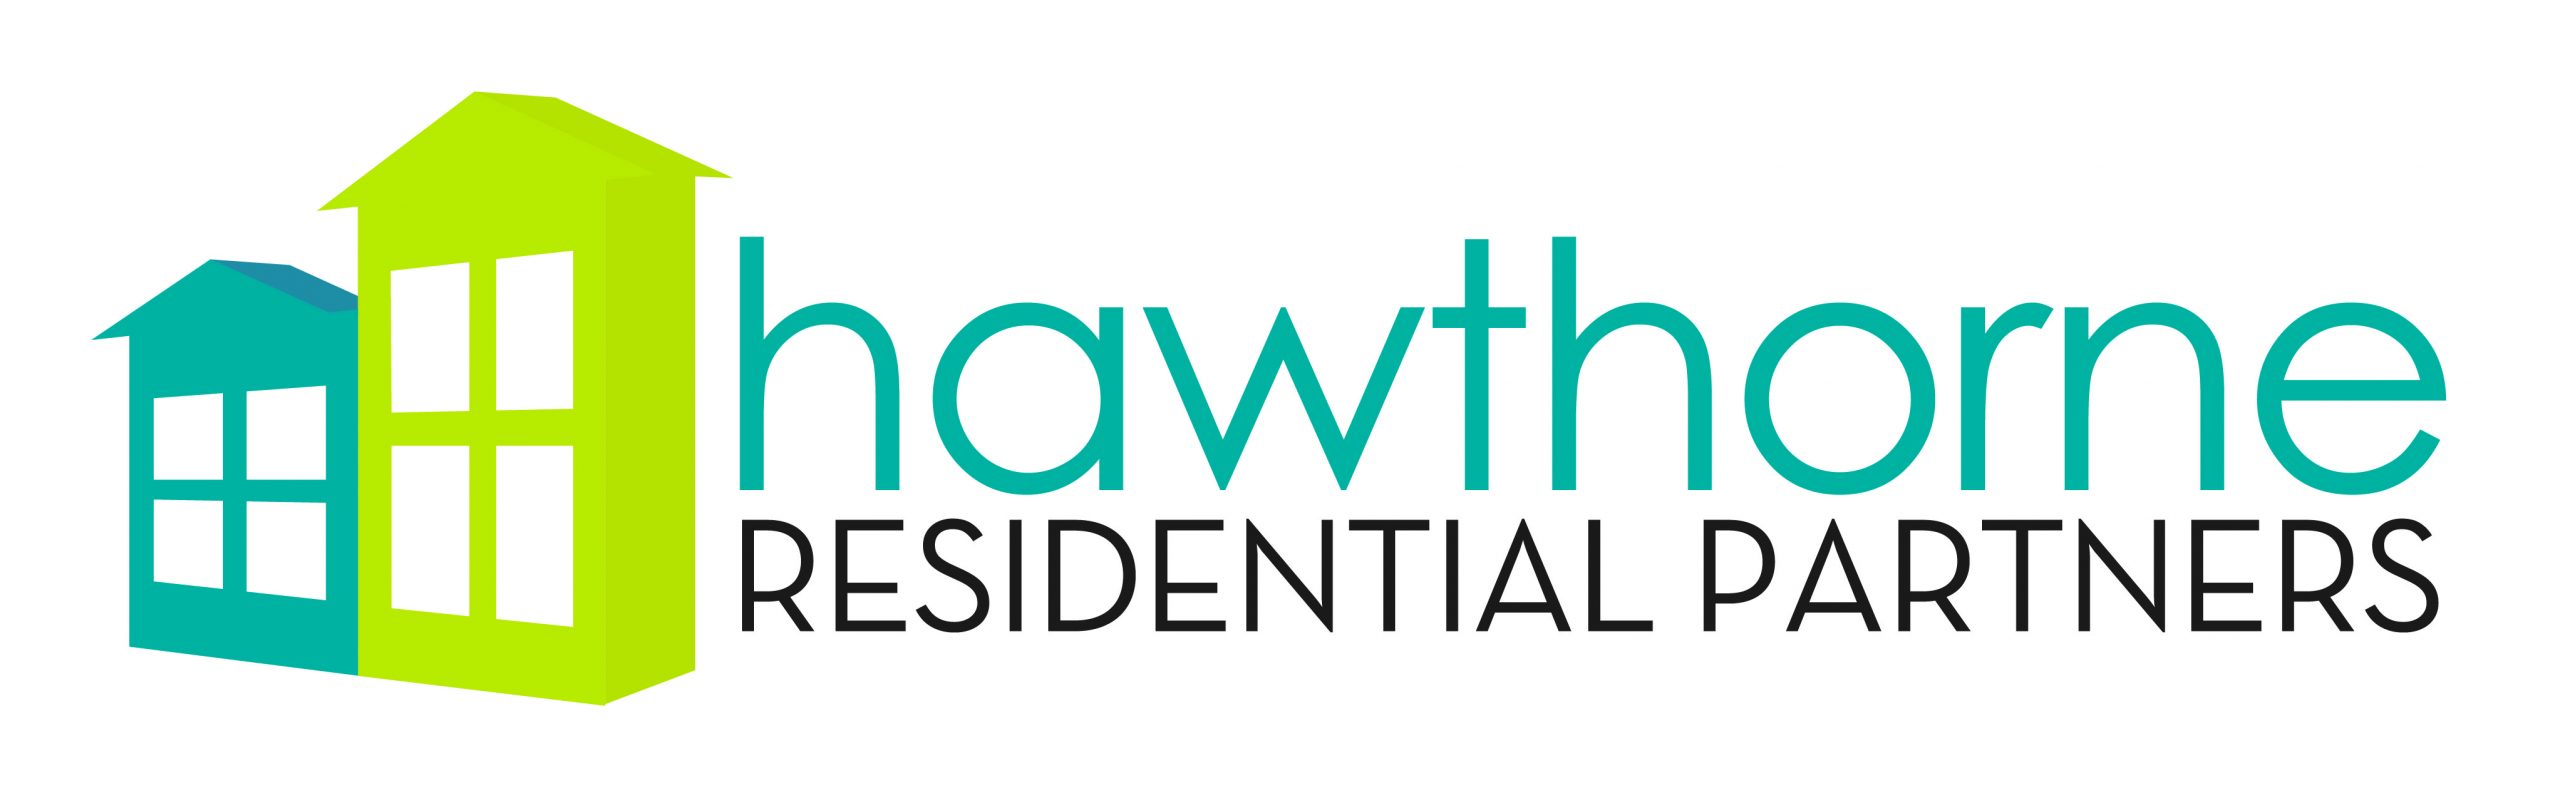 Hawthorne Residential Partners Logo